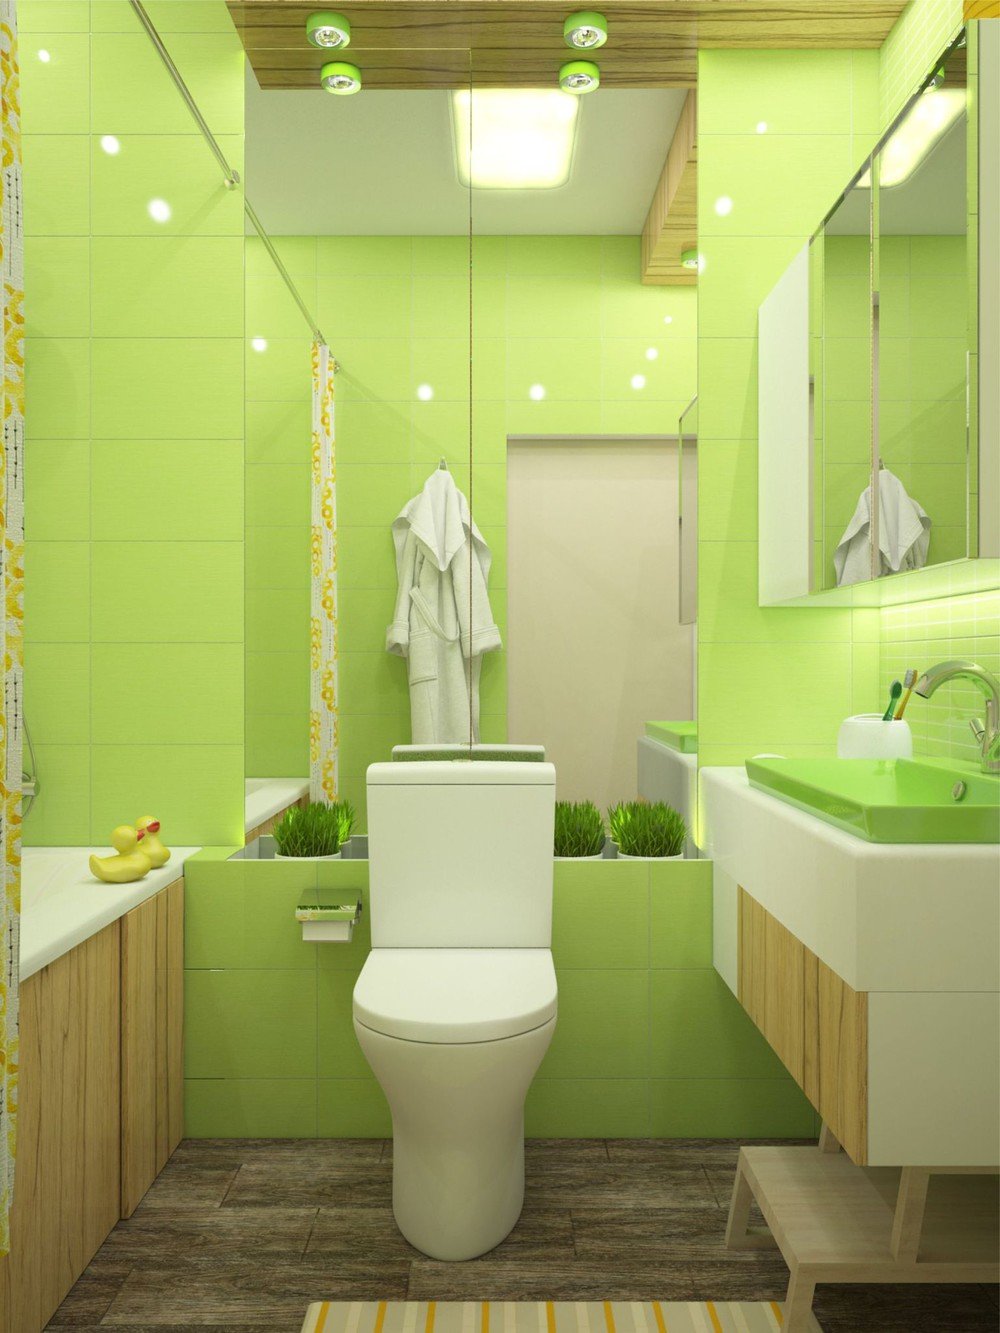 Туалет цвет зеленый. Салатовая ванная комната. Ванная в зеленом цвете. Интерьер туалета. Туалет в зеленом цвете.